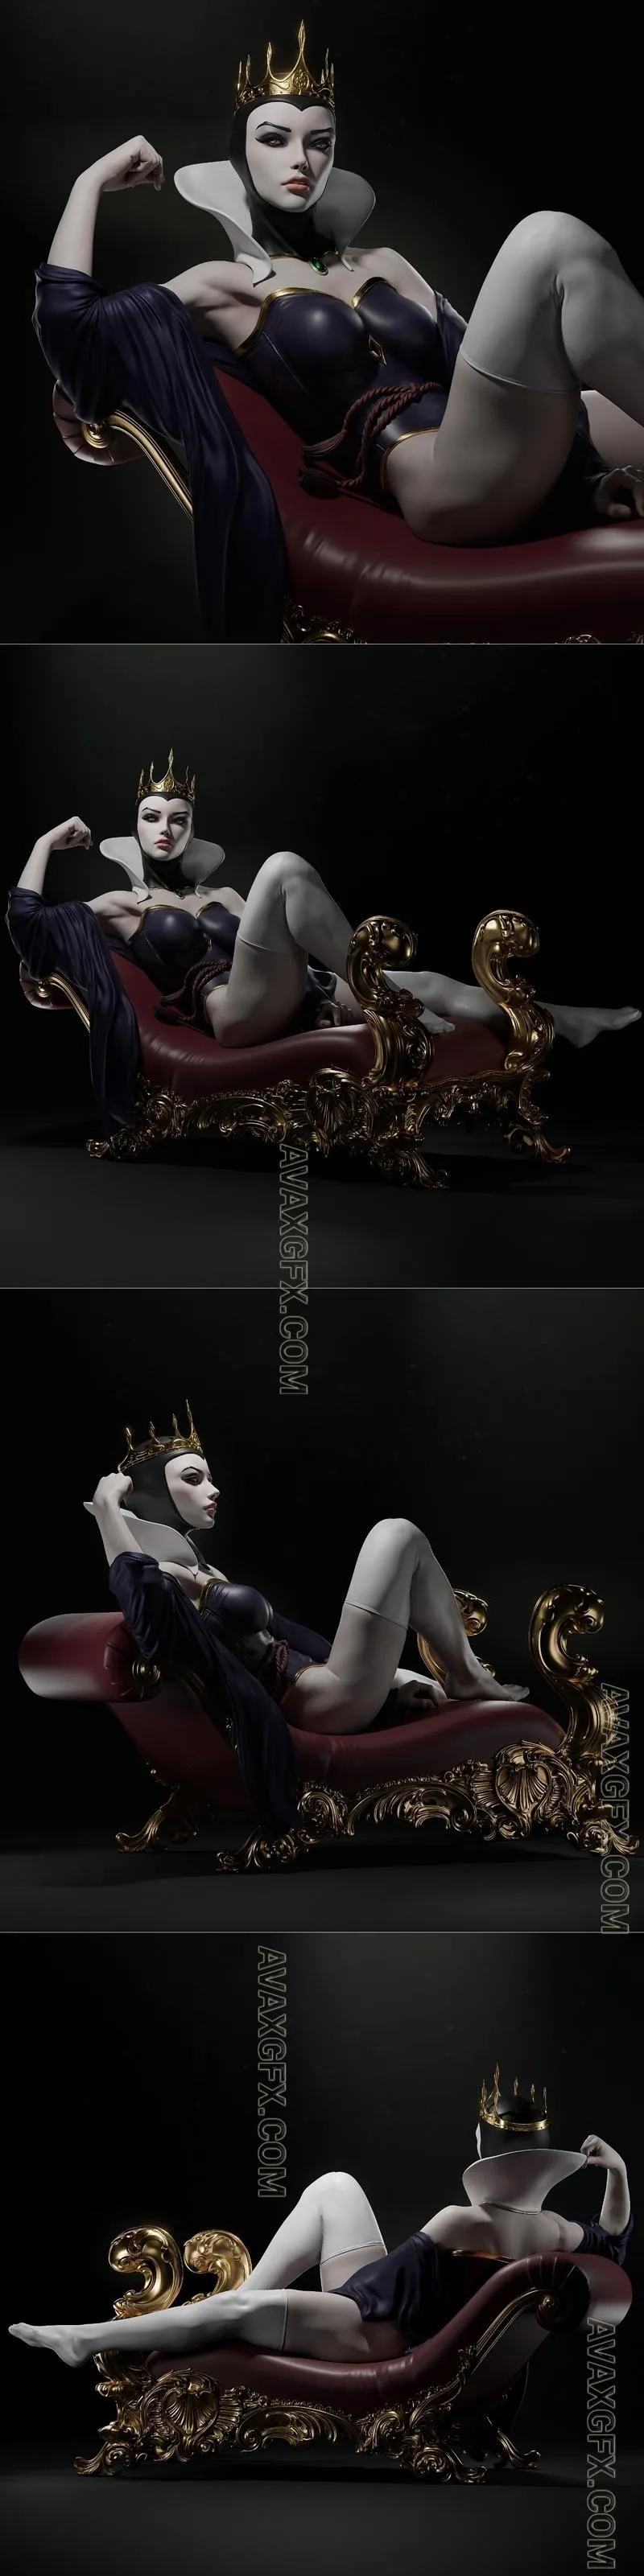 Ca 3d Studios - Evil Queen - STL 3D Model